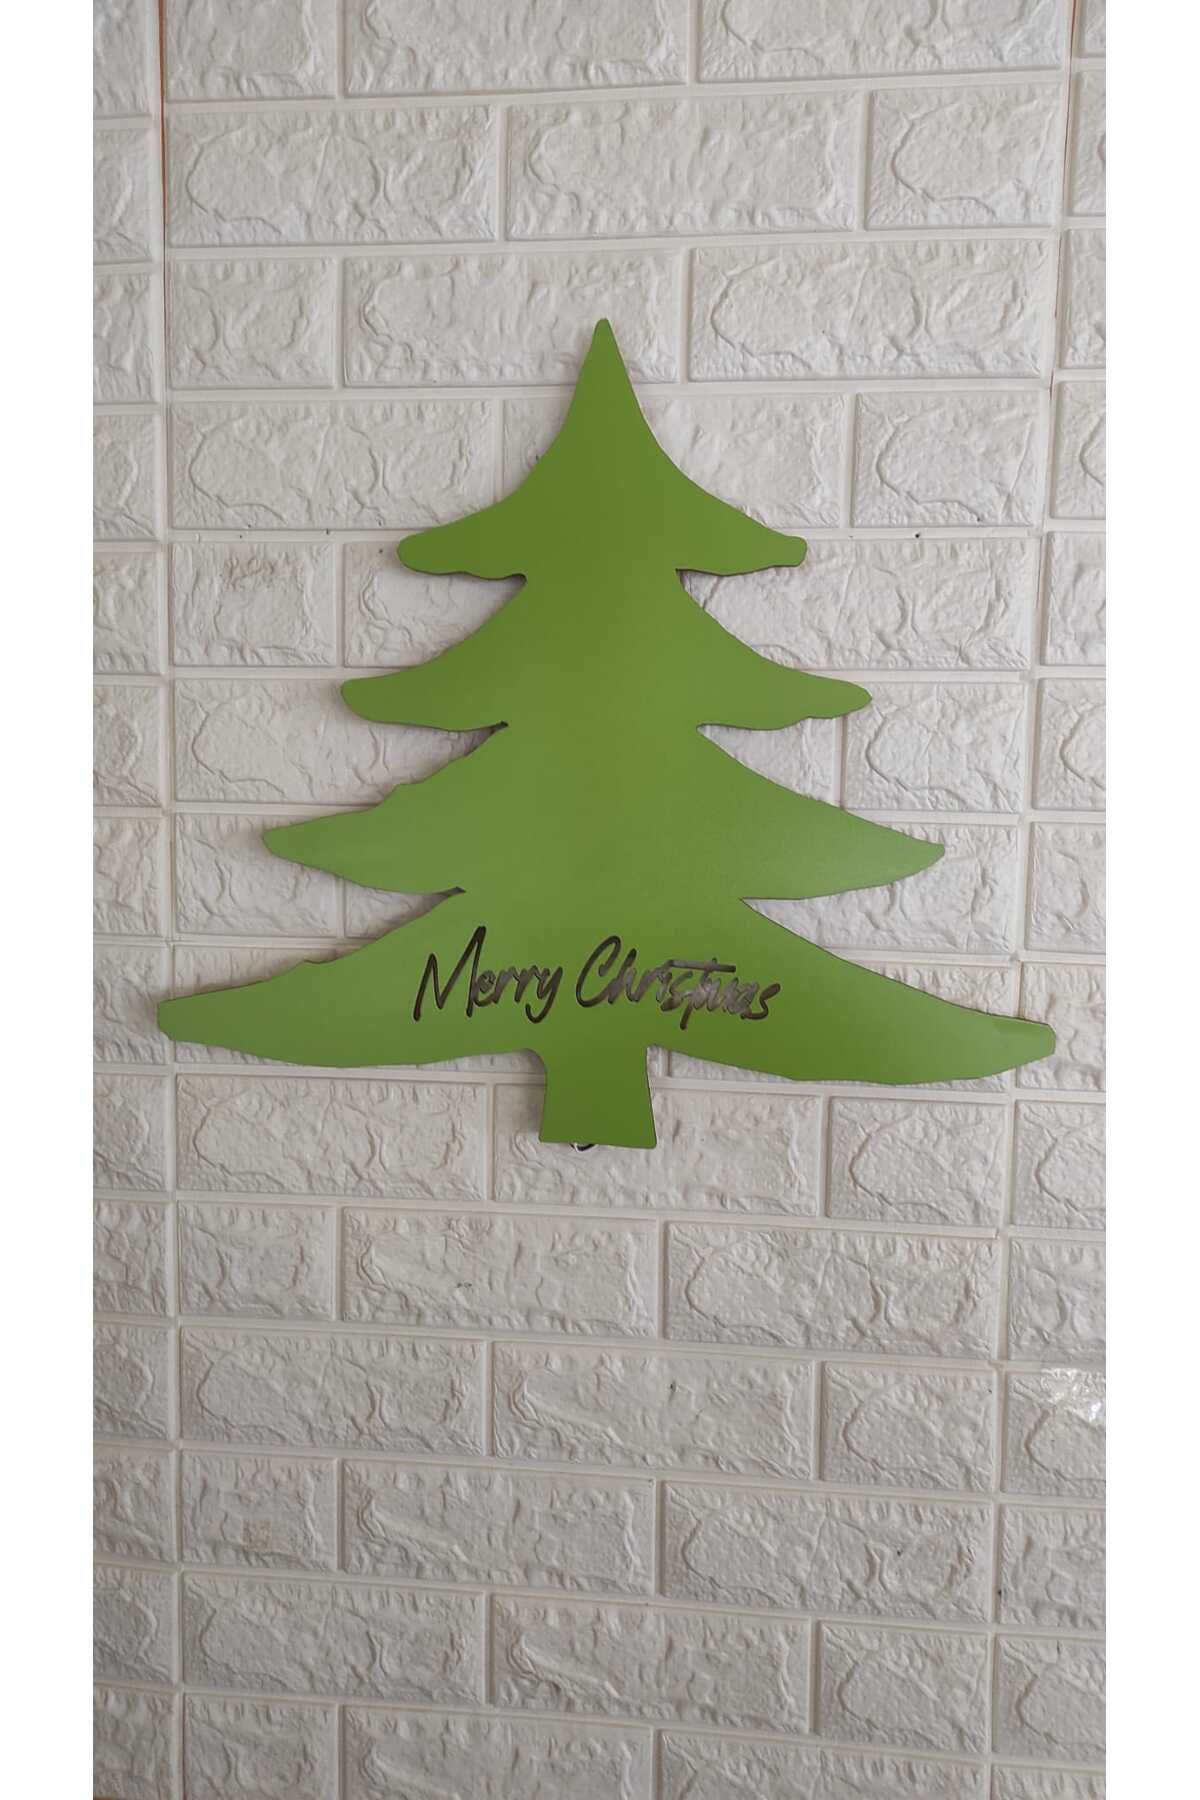 YufiDesign Yeşil Ahşap Yılbaşı Ağacı, Işıklandırılmış Duvar Tablosu, Yeni Yıl Ağacı, Yılbaşı Ağacı Dekoru